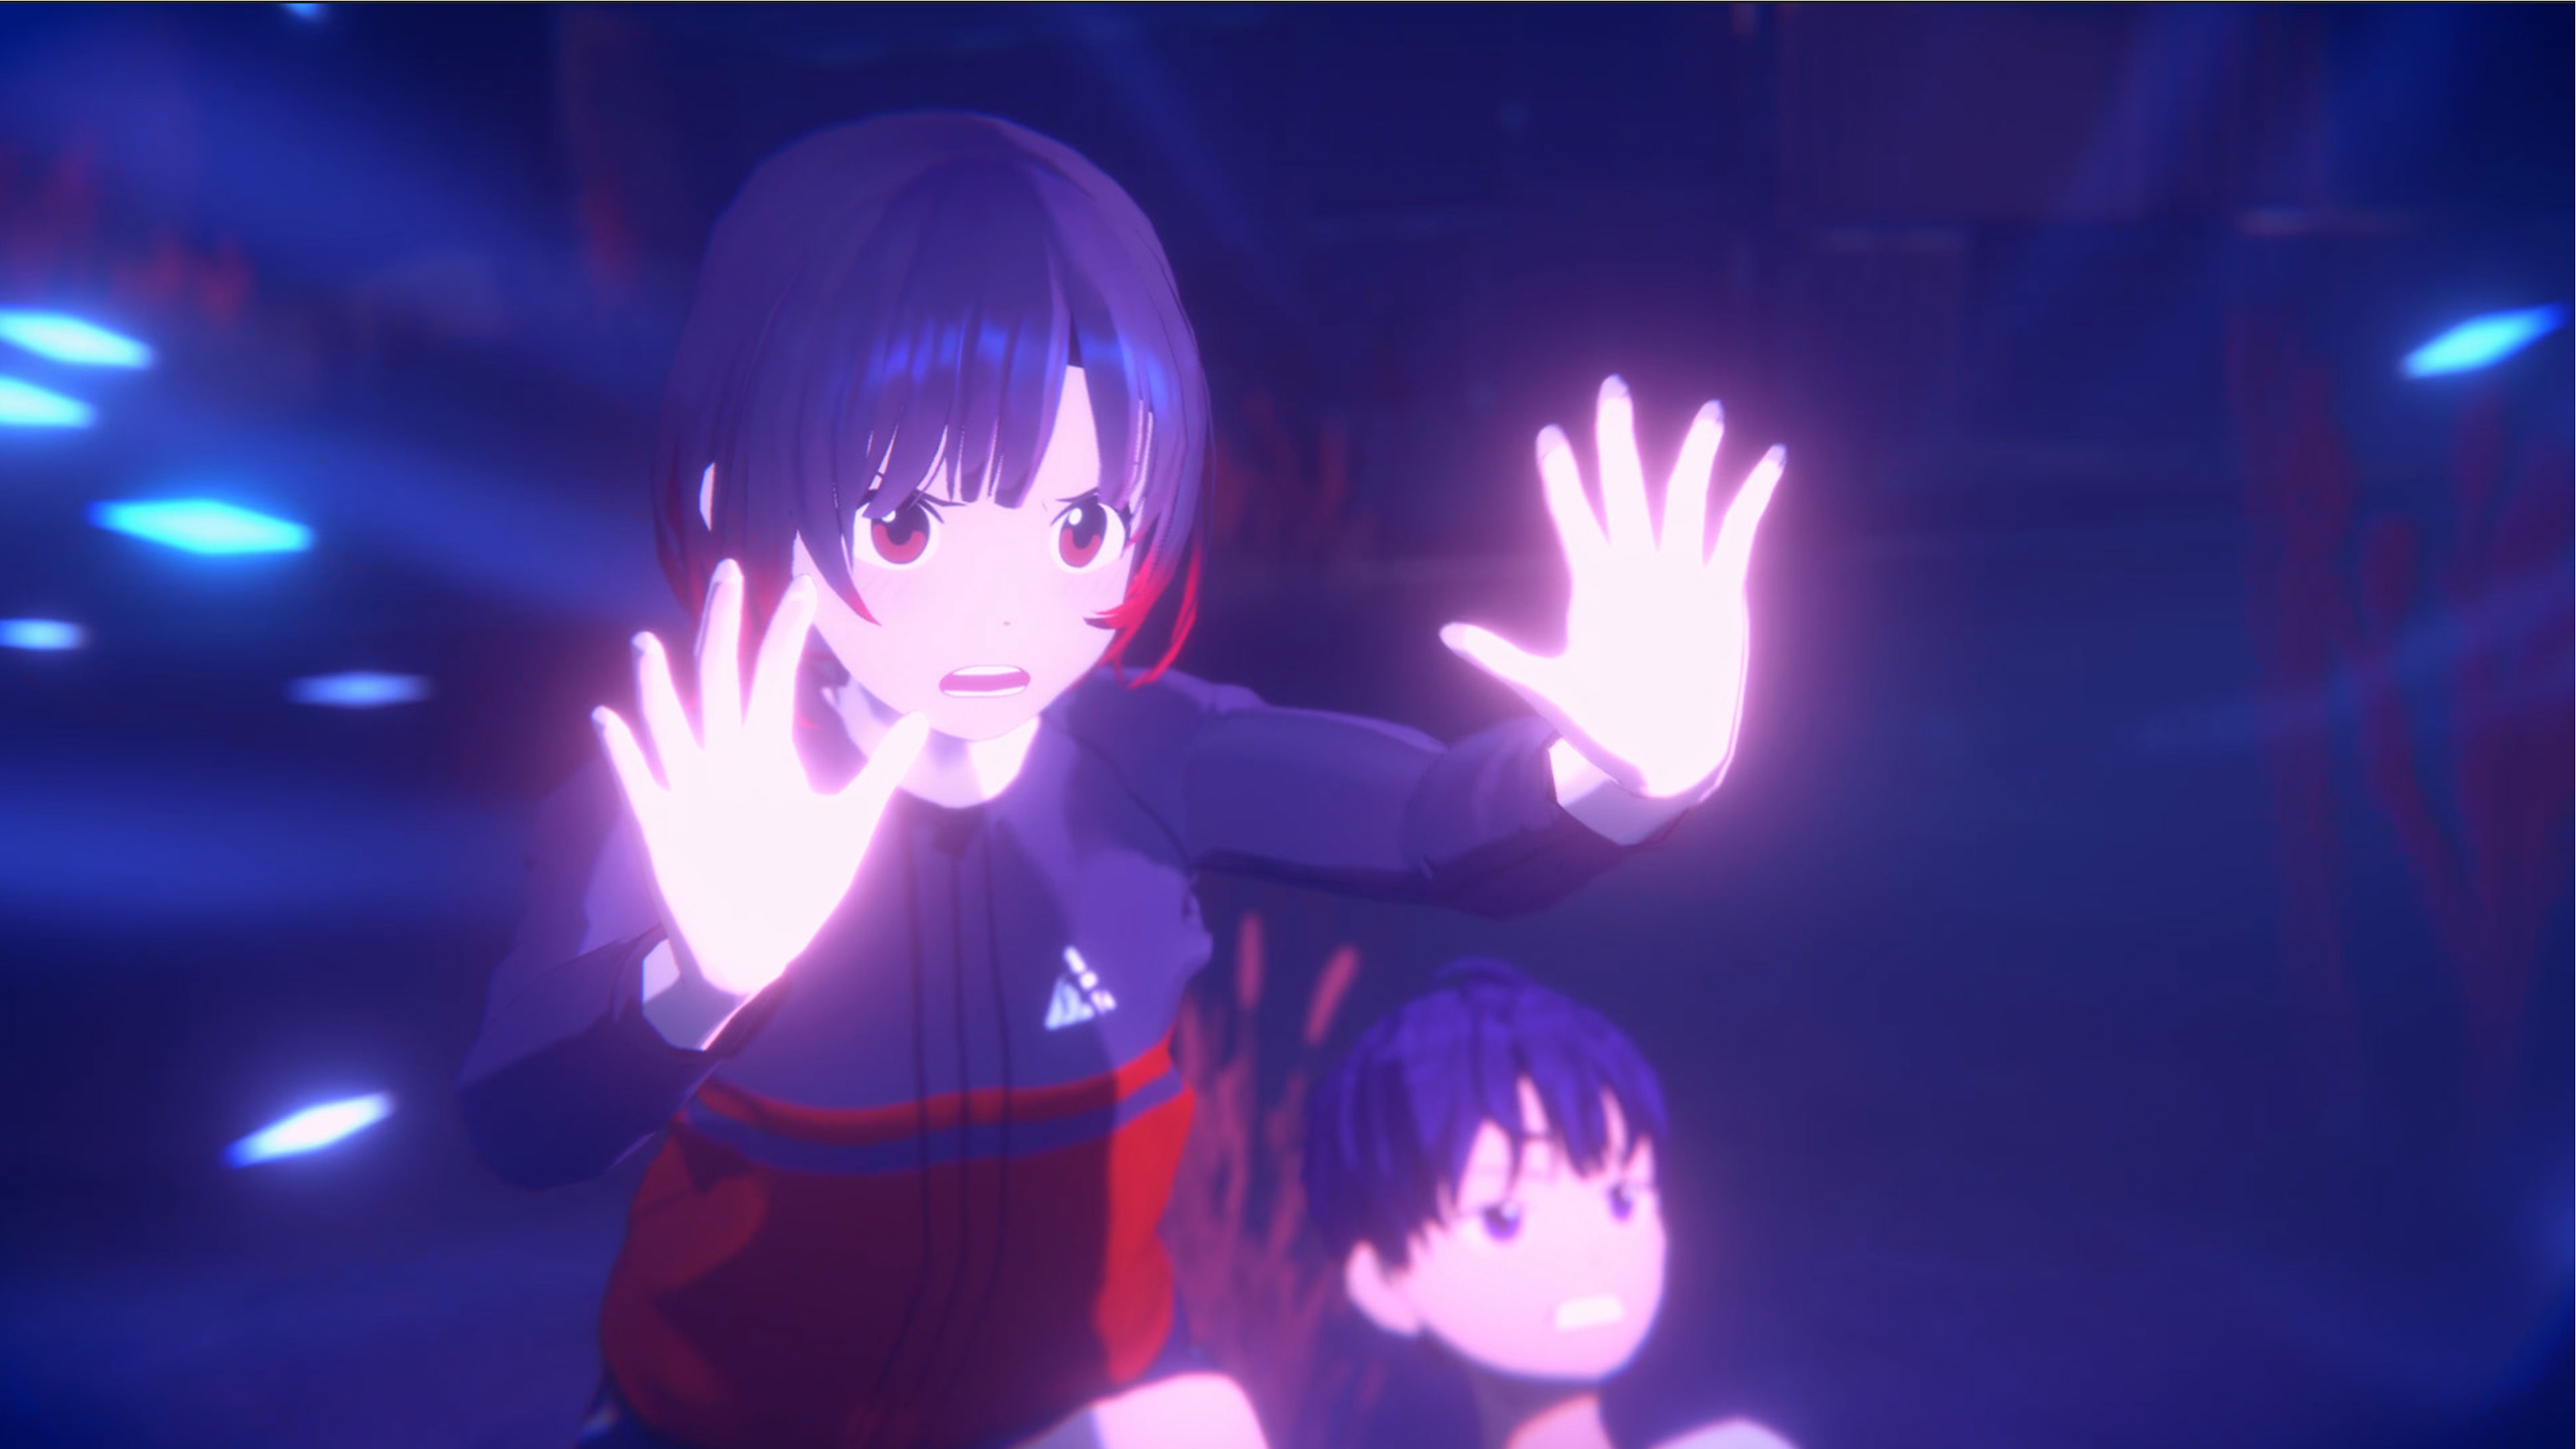 Captura de pantalla de Eternights mostrando a una chica adolescente repeliendo a un asaltante oculto.